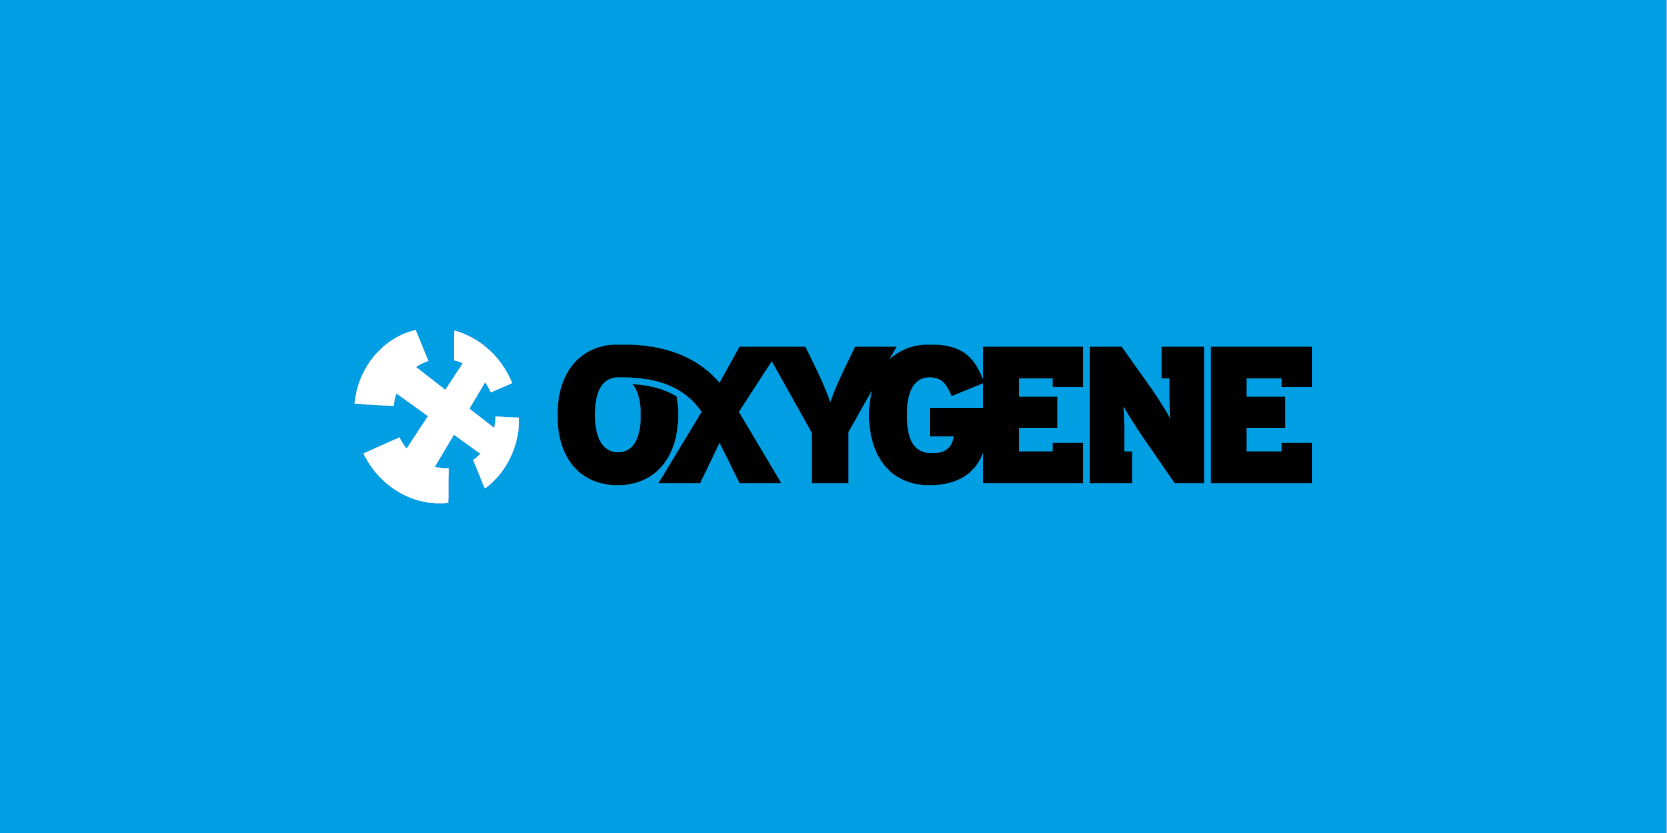 Oxygene